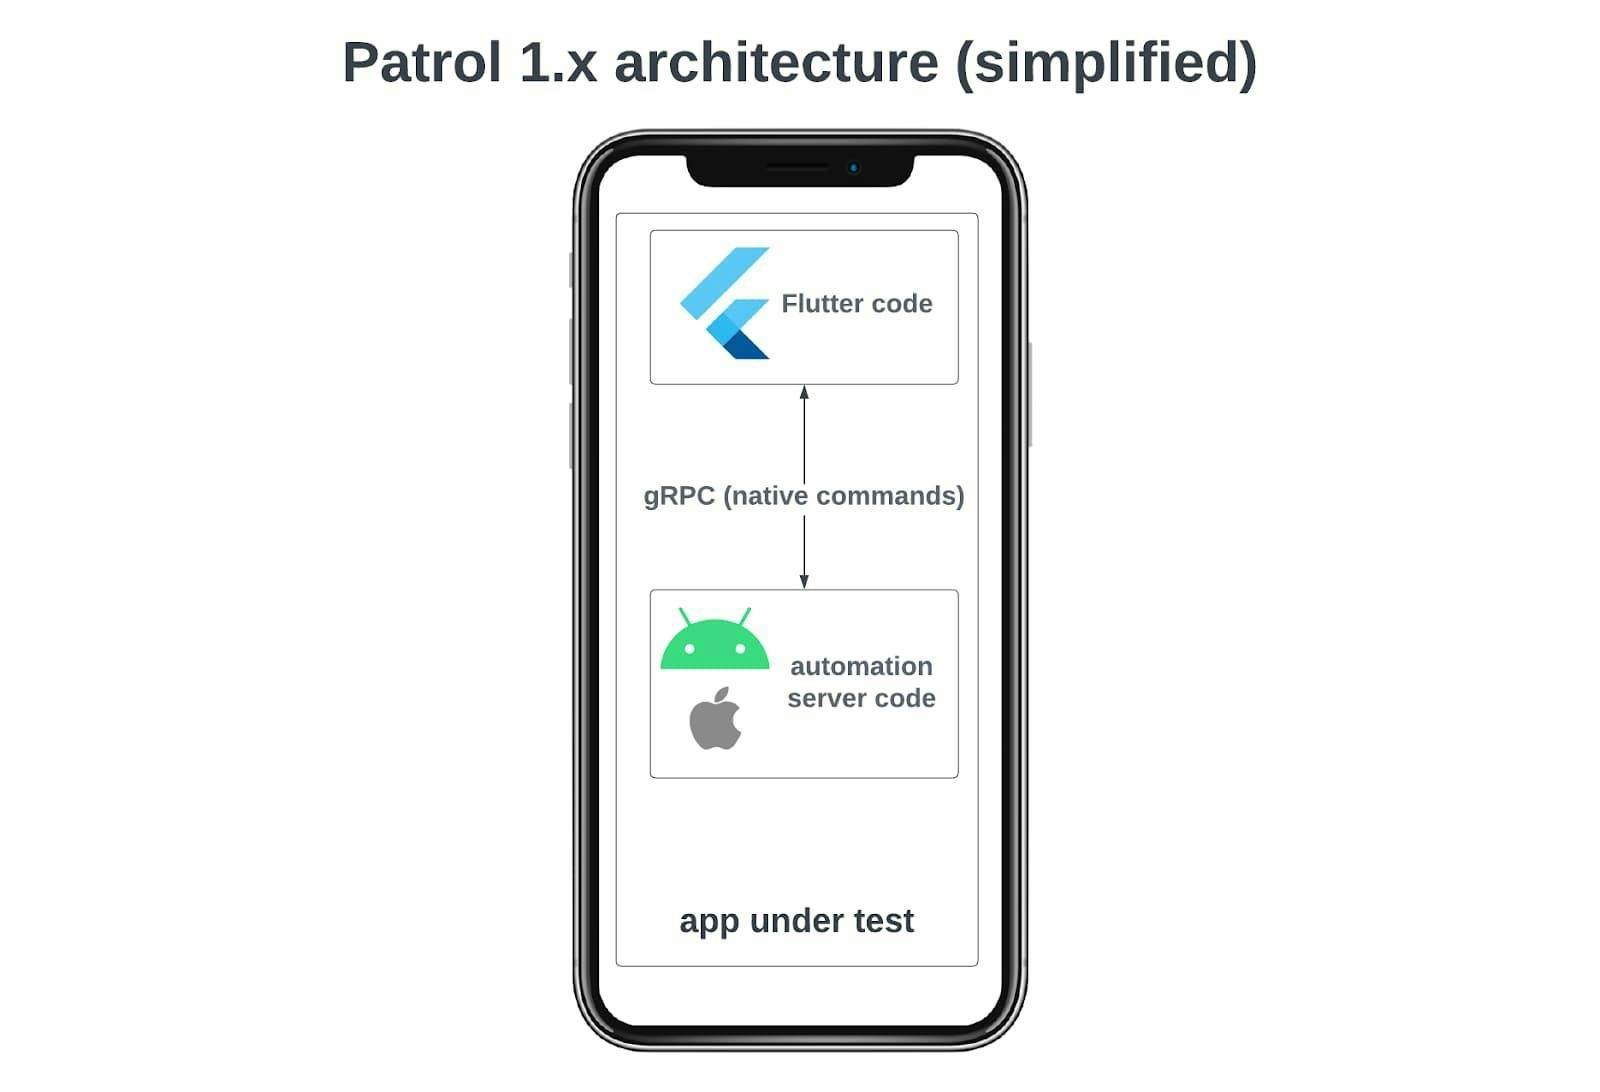 Patrol 1 user interface testing